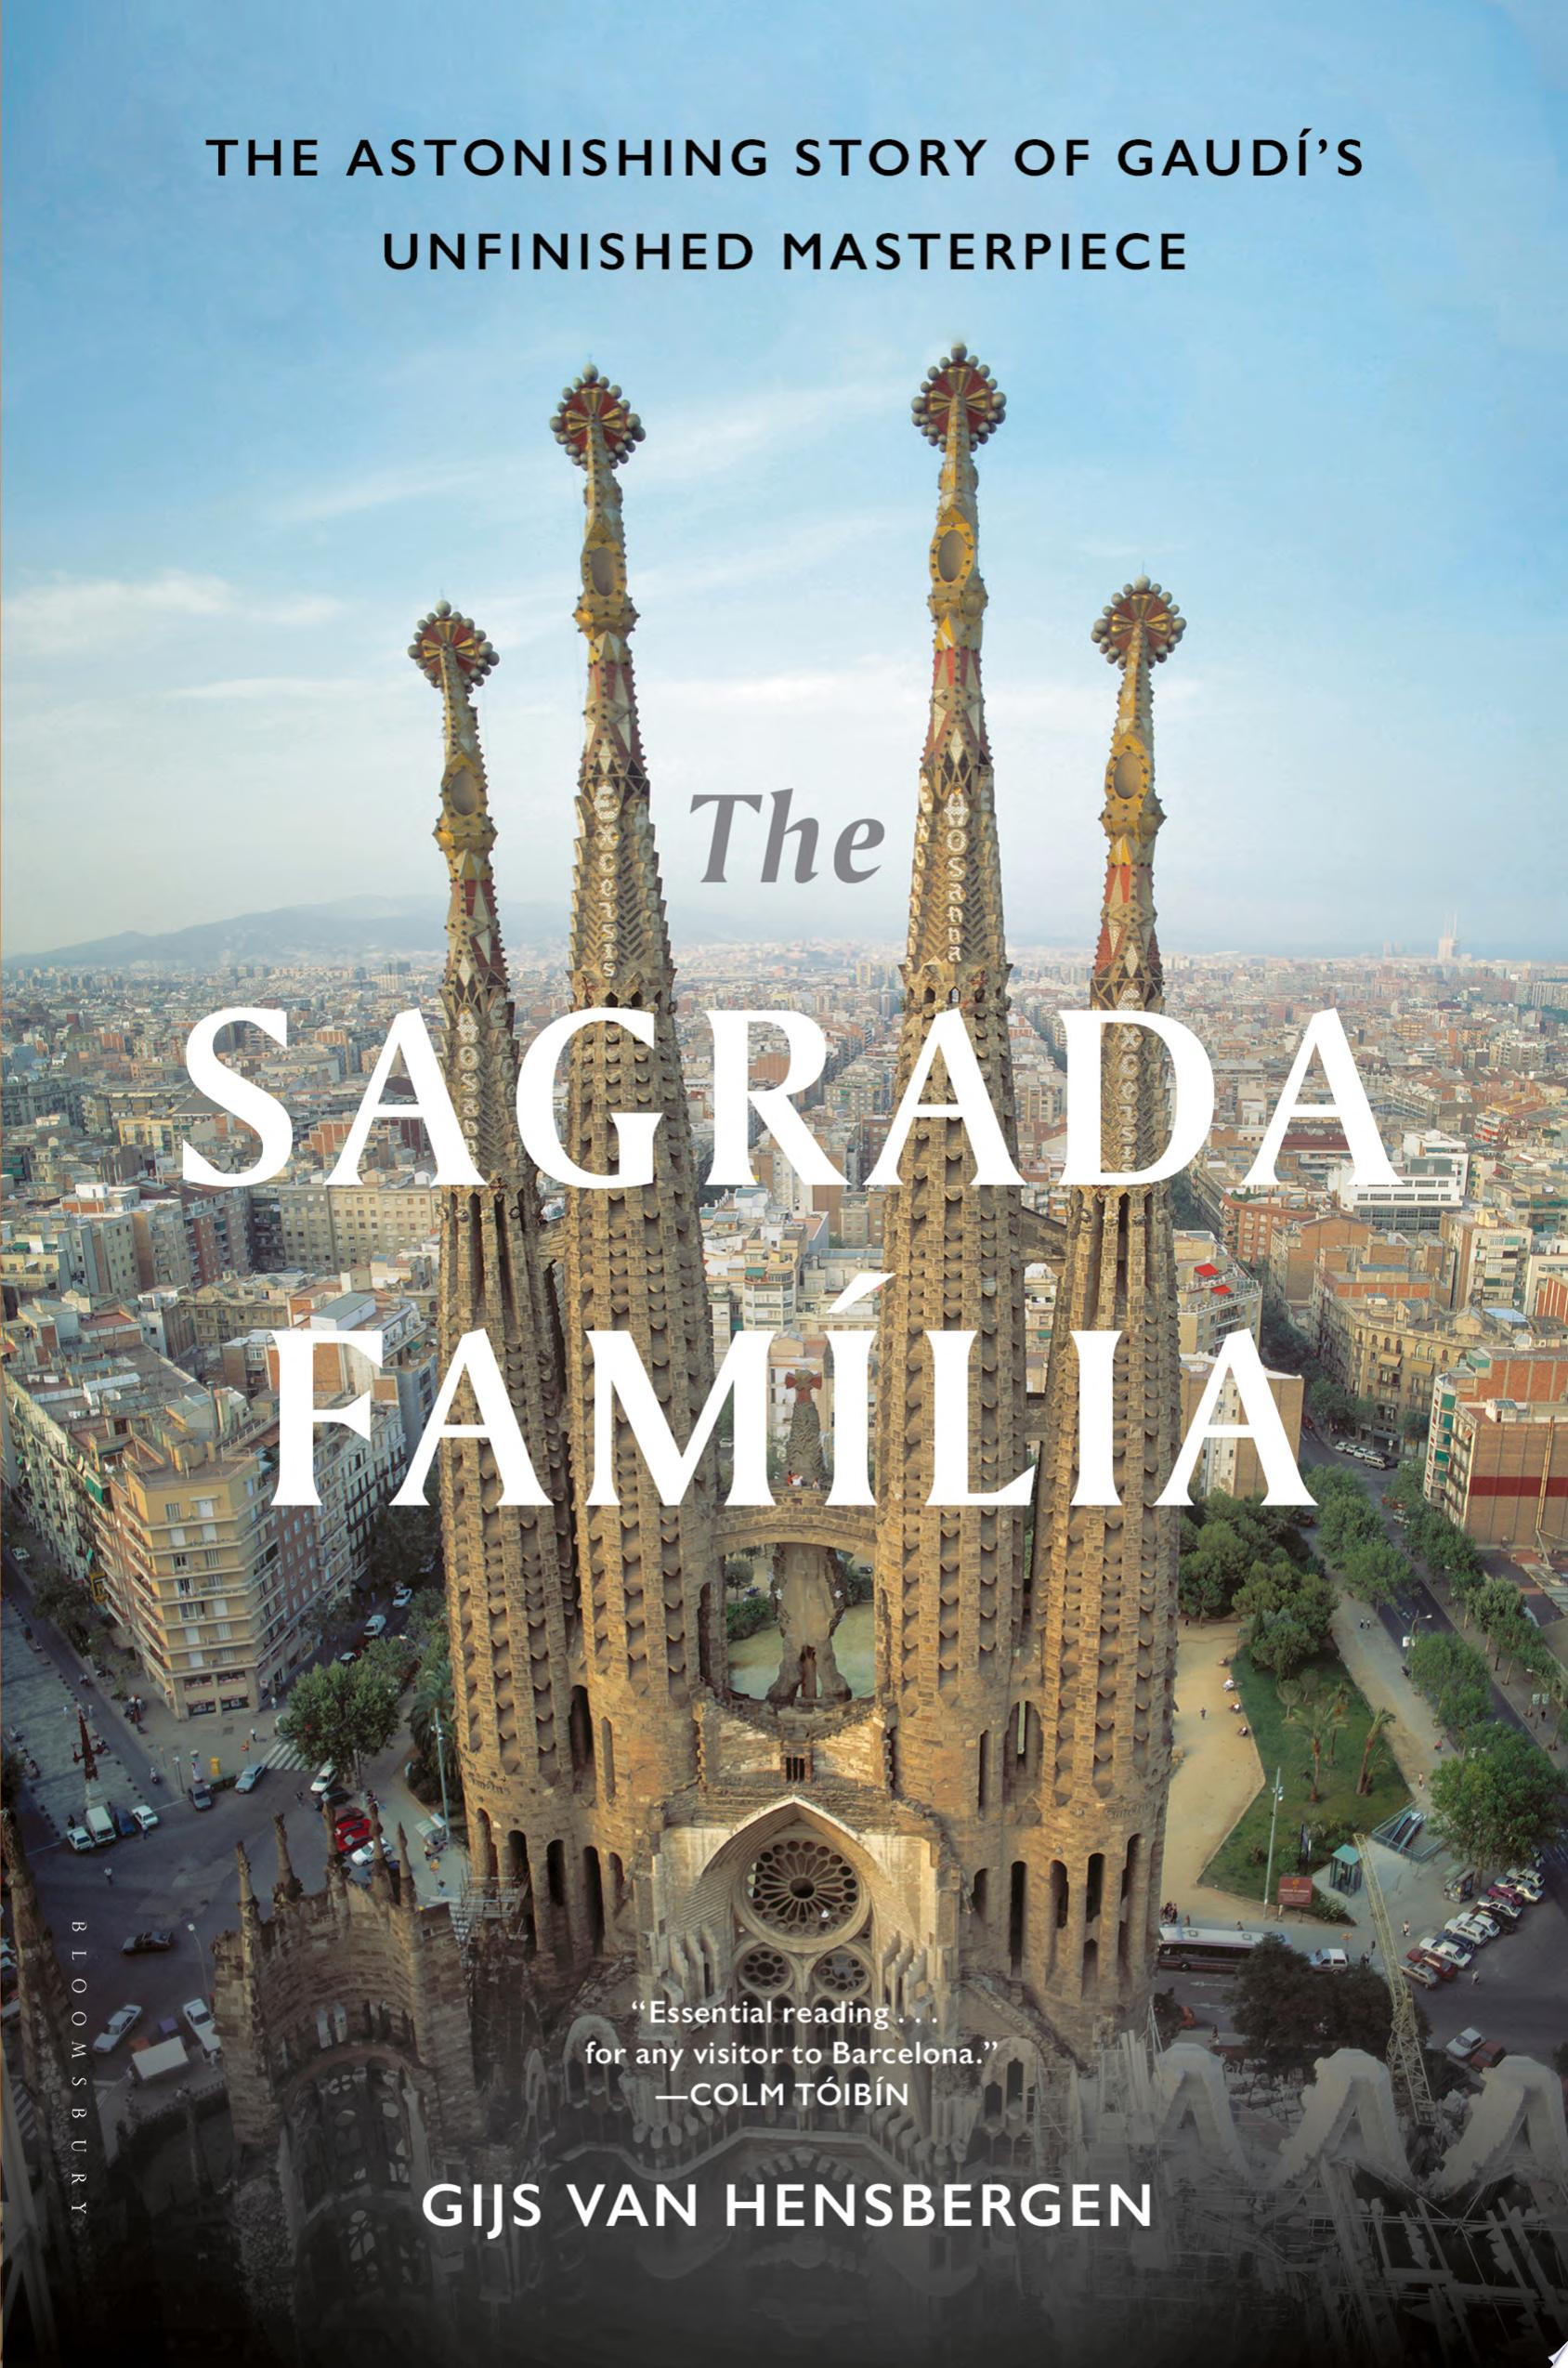 Image for "The Sagrada Familia"